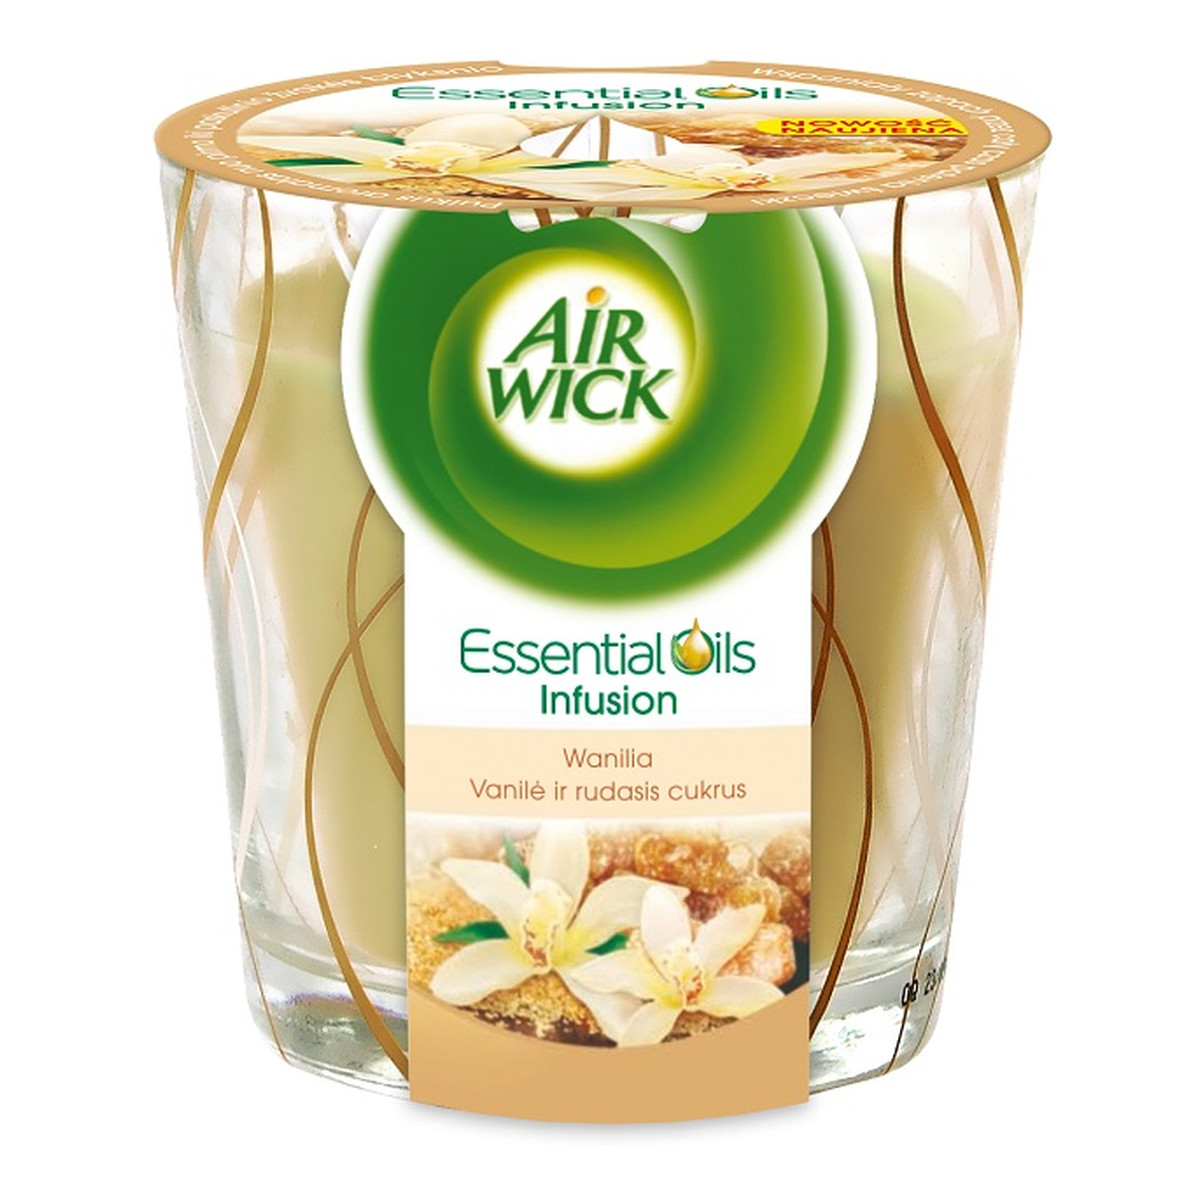 Air Wick Essential Oils Infusion Świeca zapachowa Wanilia 105g